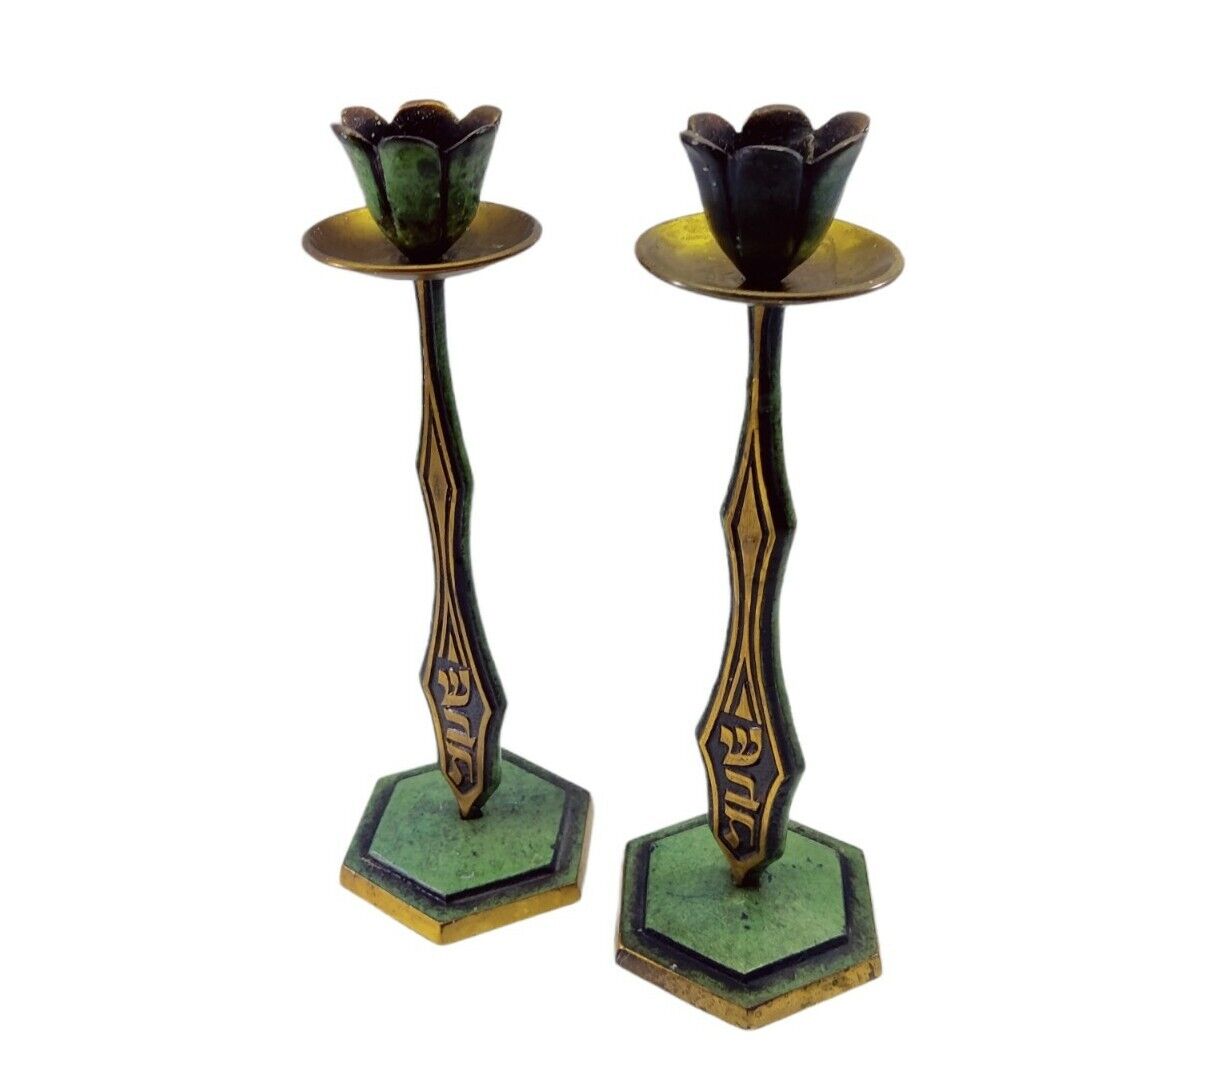 Israel Brass Candle Holders Vintage Judaica Pair Green Black